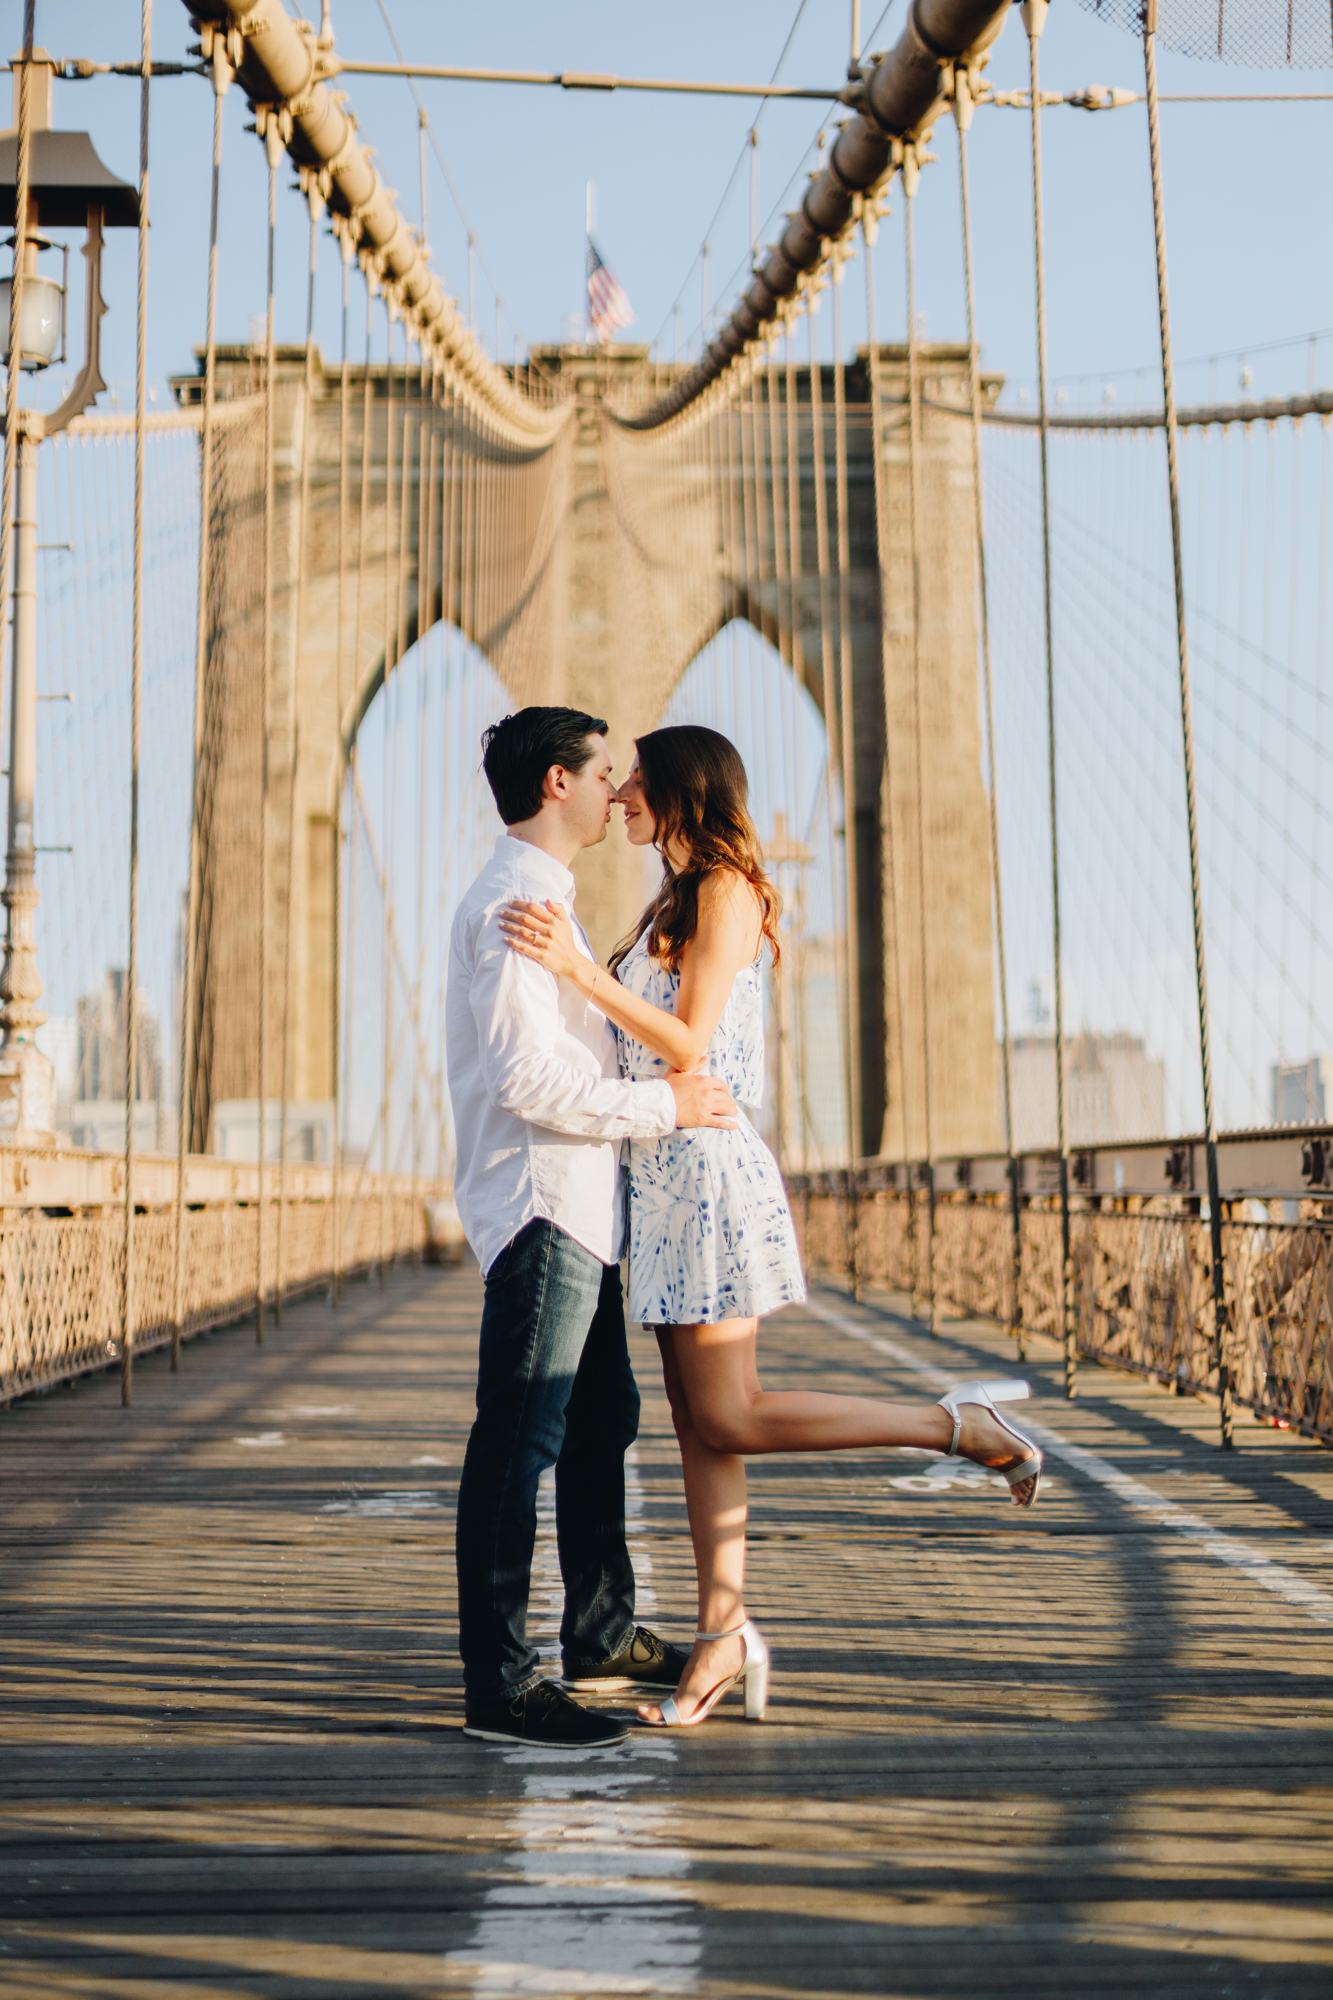 Amazing Brooklyn Bridge Engagement Photos